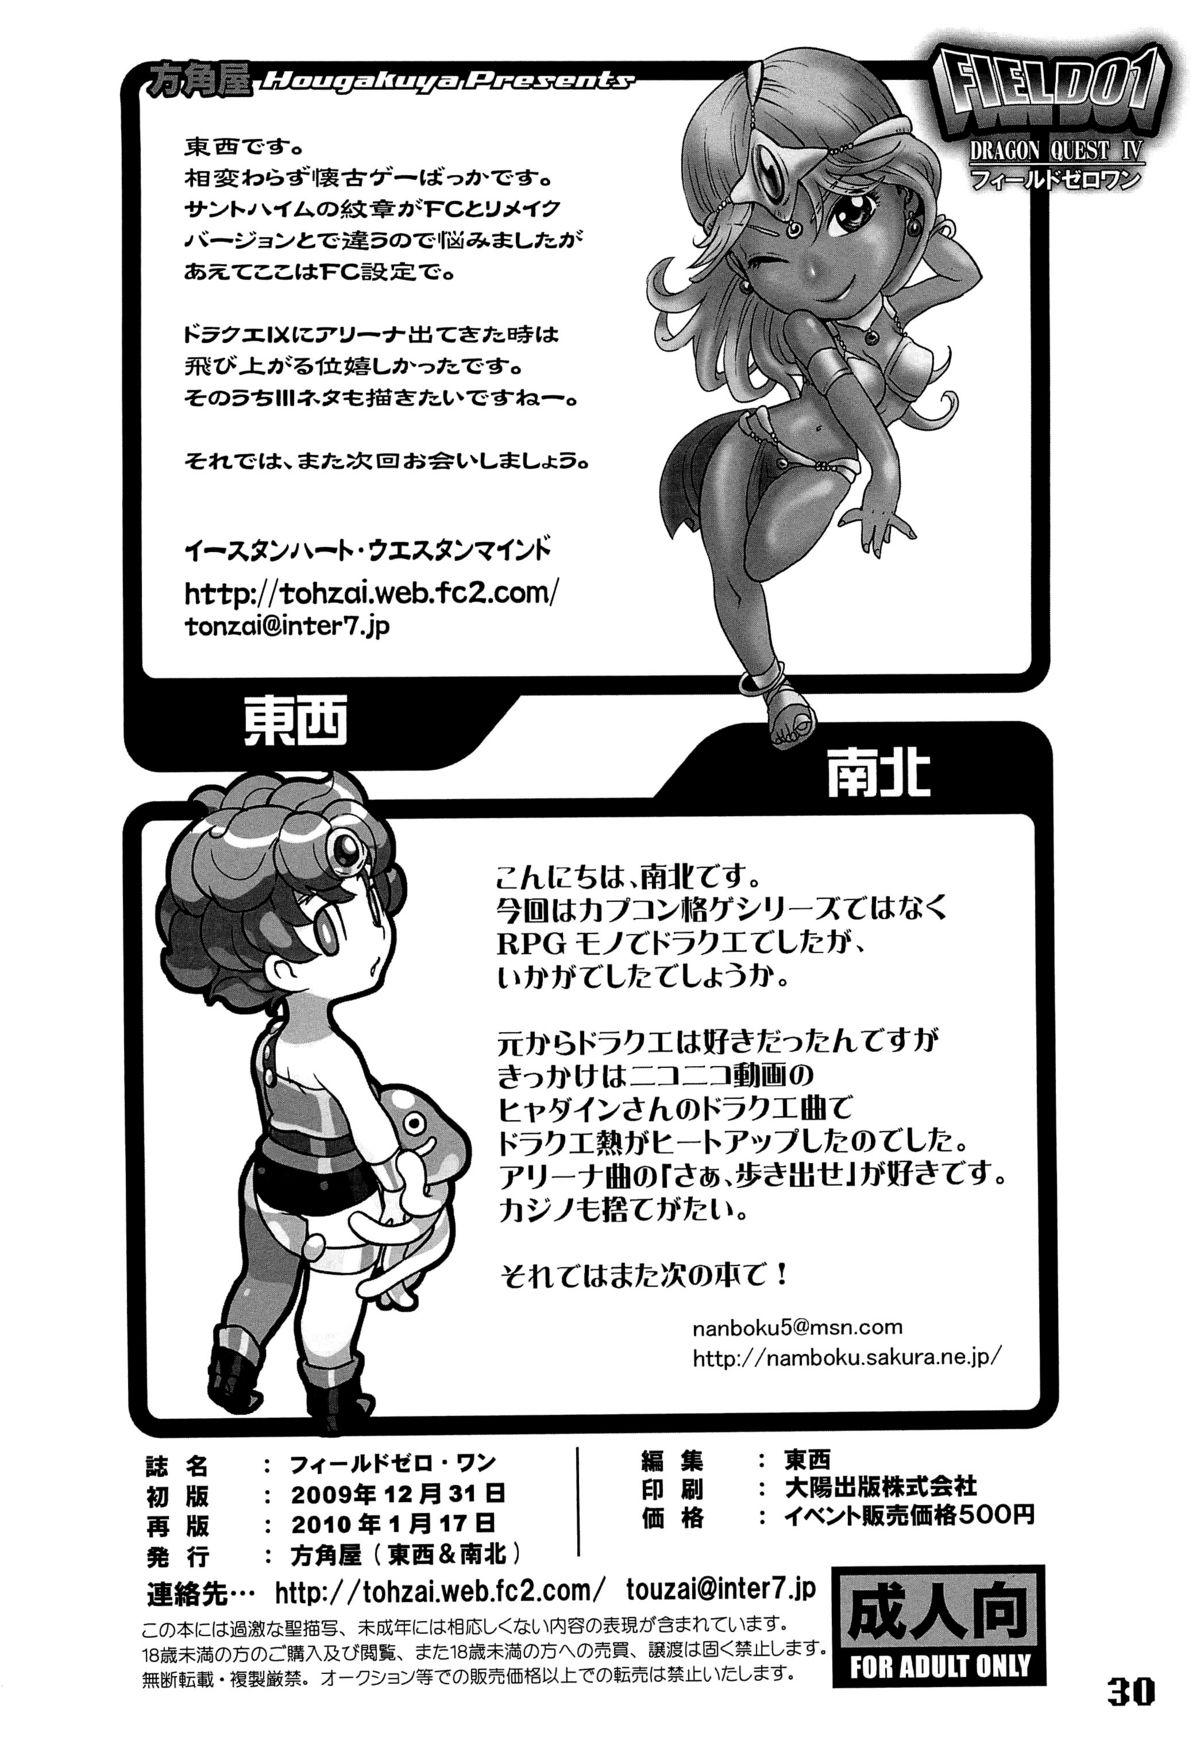 Madura FIELD 01 - Dragon quest iv Alt - Page 29